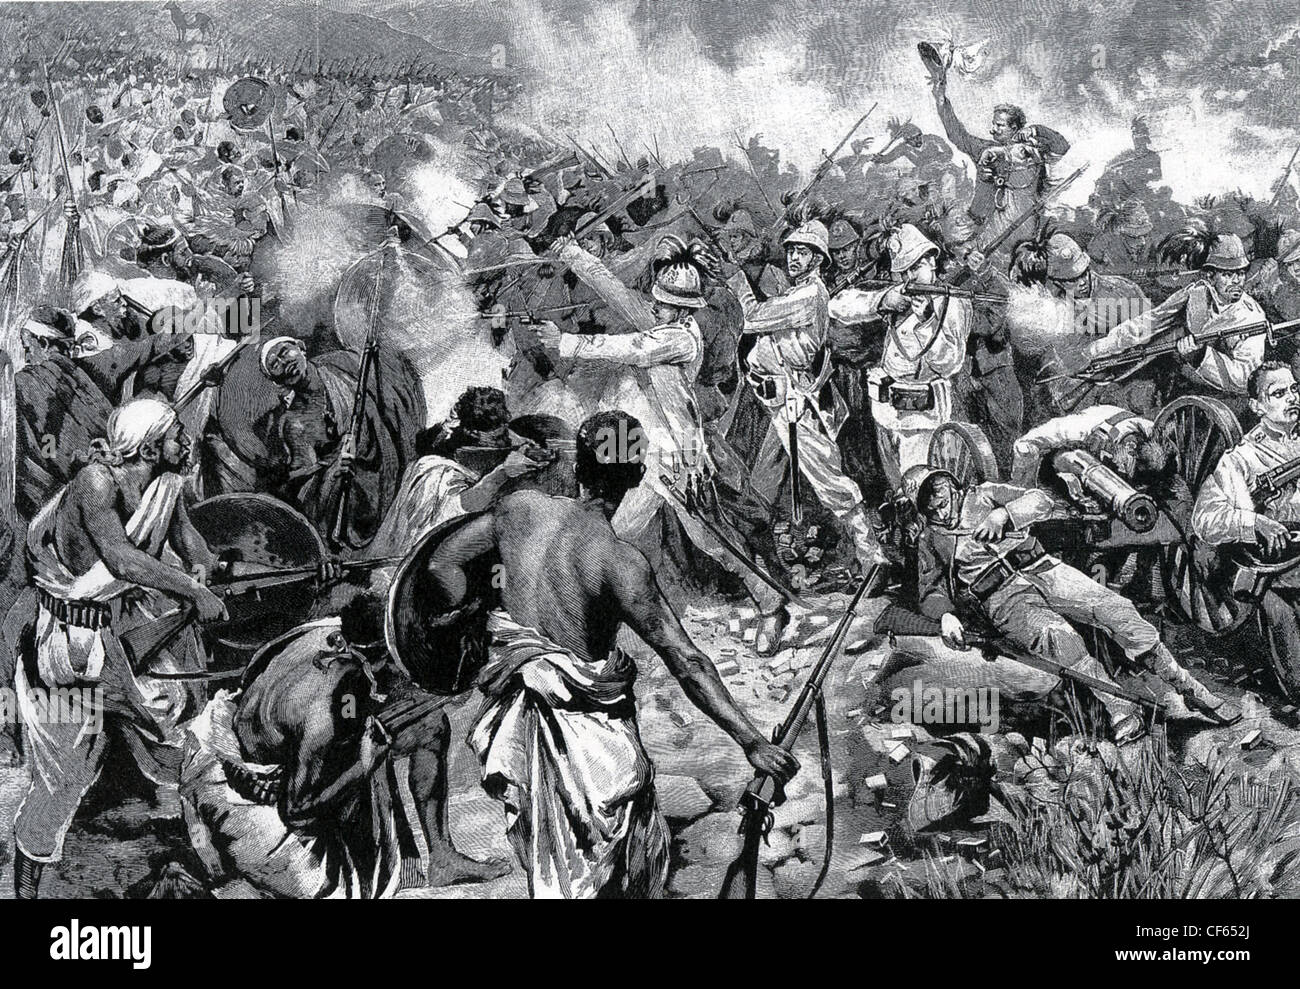 Schlacht von ADOWA 1896 italienische Truppen sind durch äthiopische Truppen umgeben. Stockfoto